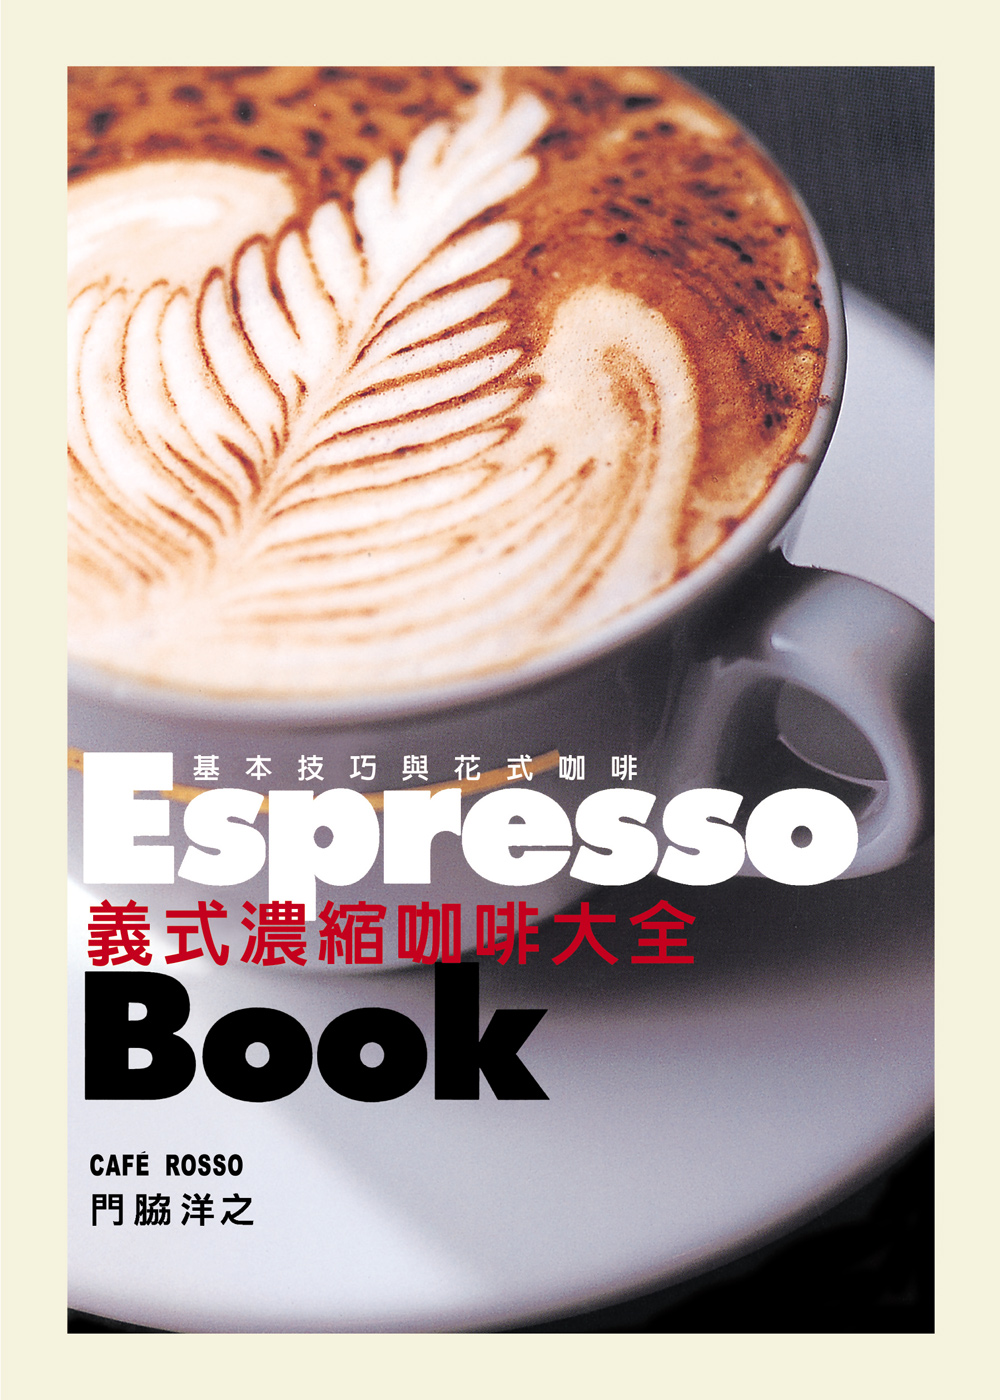 ►飲食►暢銷書► 義式濃縮咖啡大全Espresso Book：日本咖啡師冠軍傳授終極技巧，嗜啡者唯一必備指南